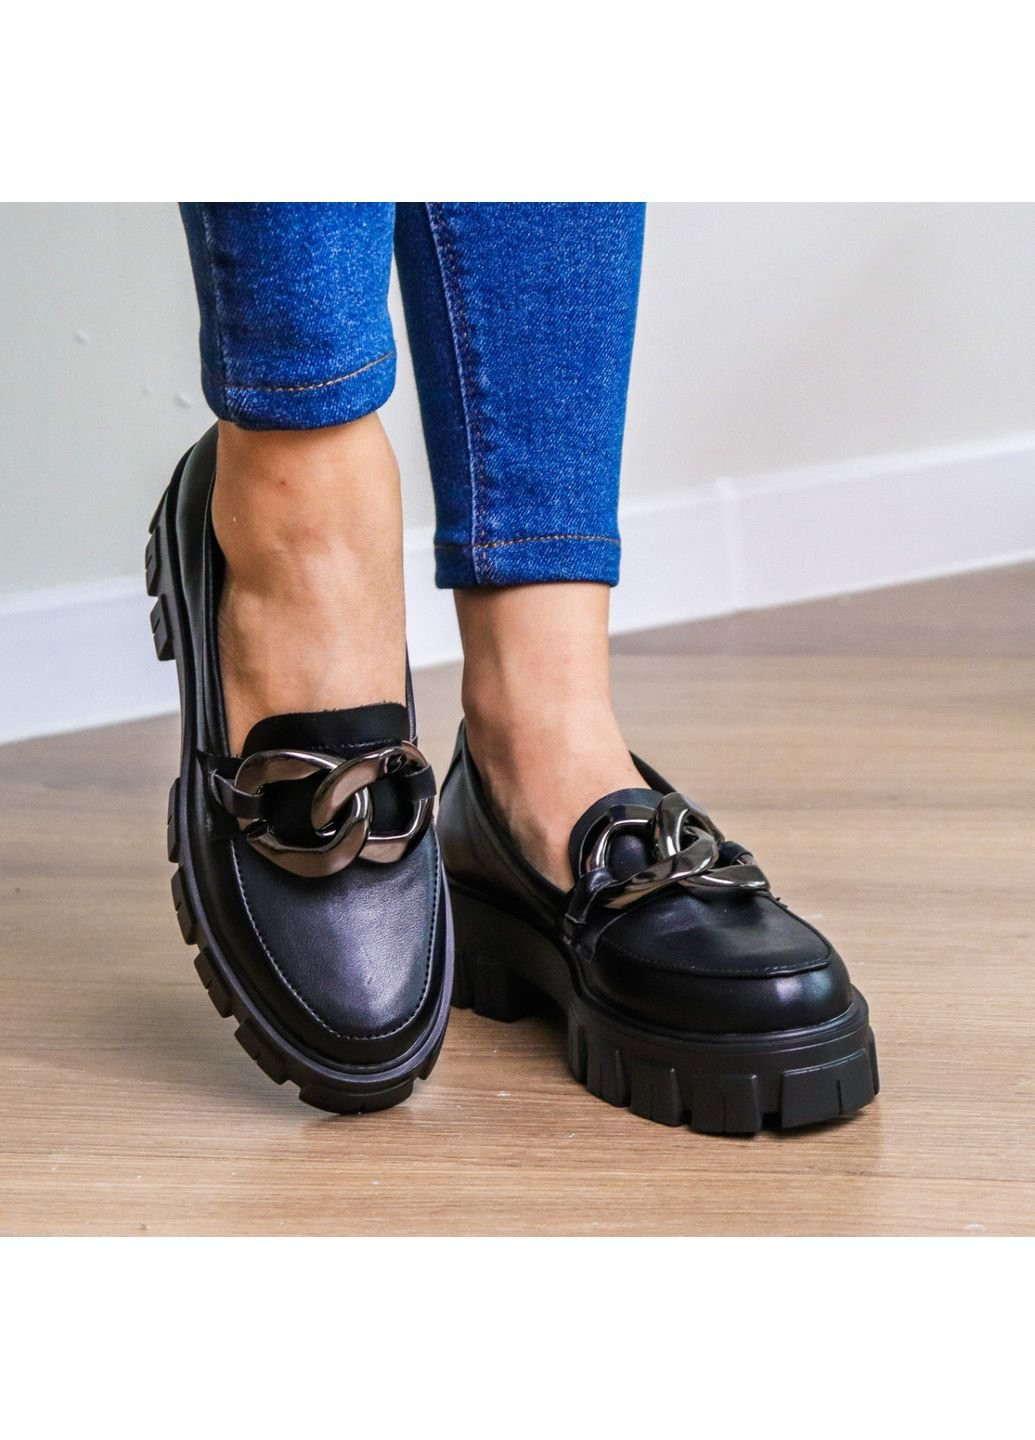 Туфли женские Vizier 3271 40 25,5 см Черный Fashion